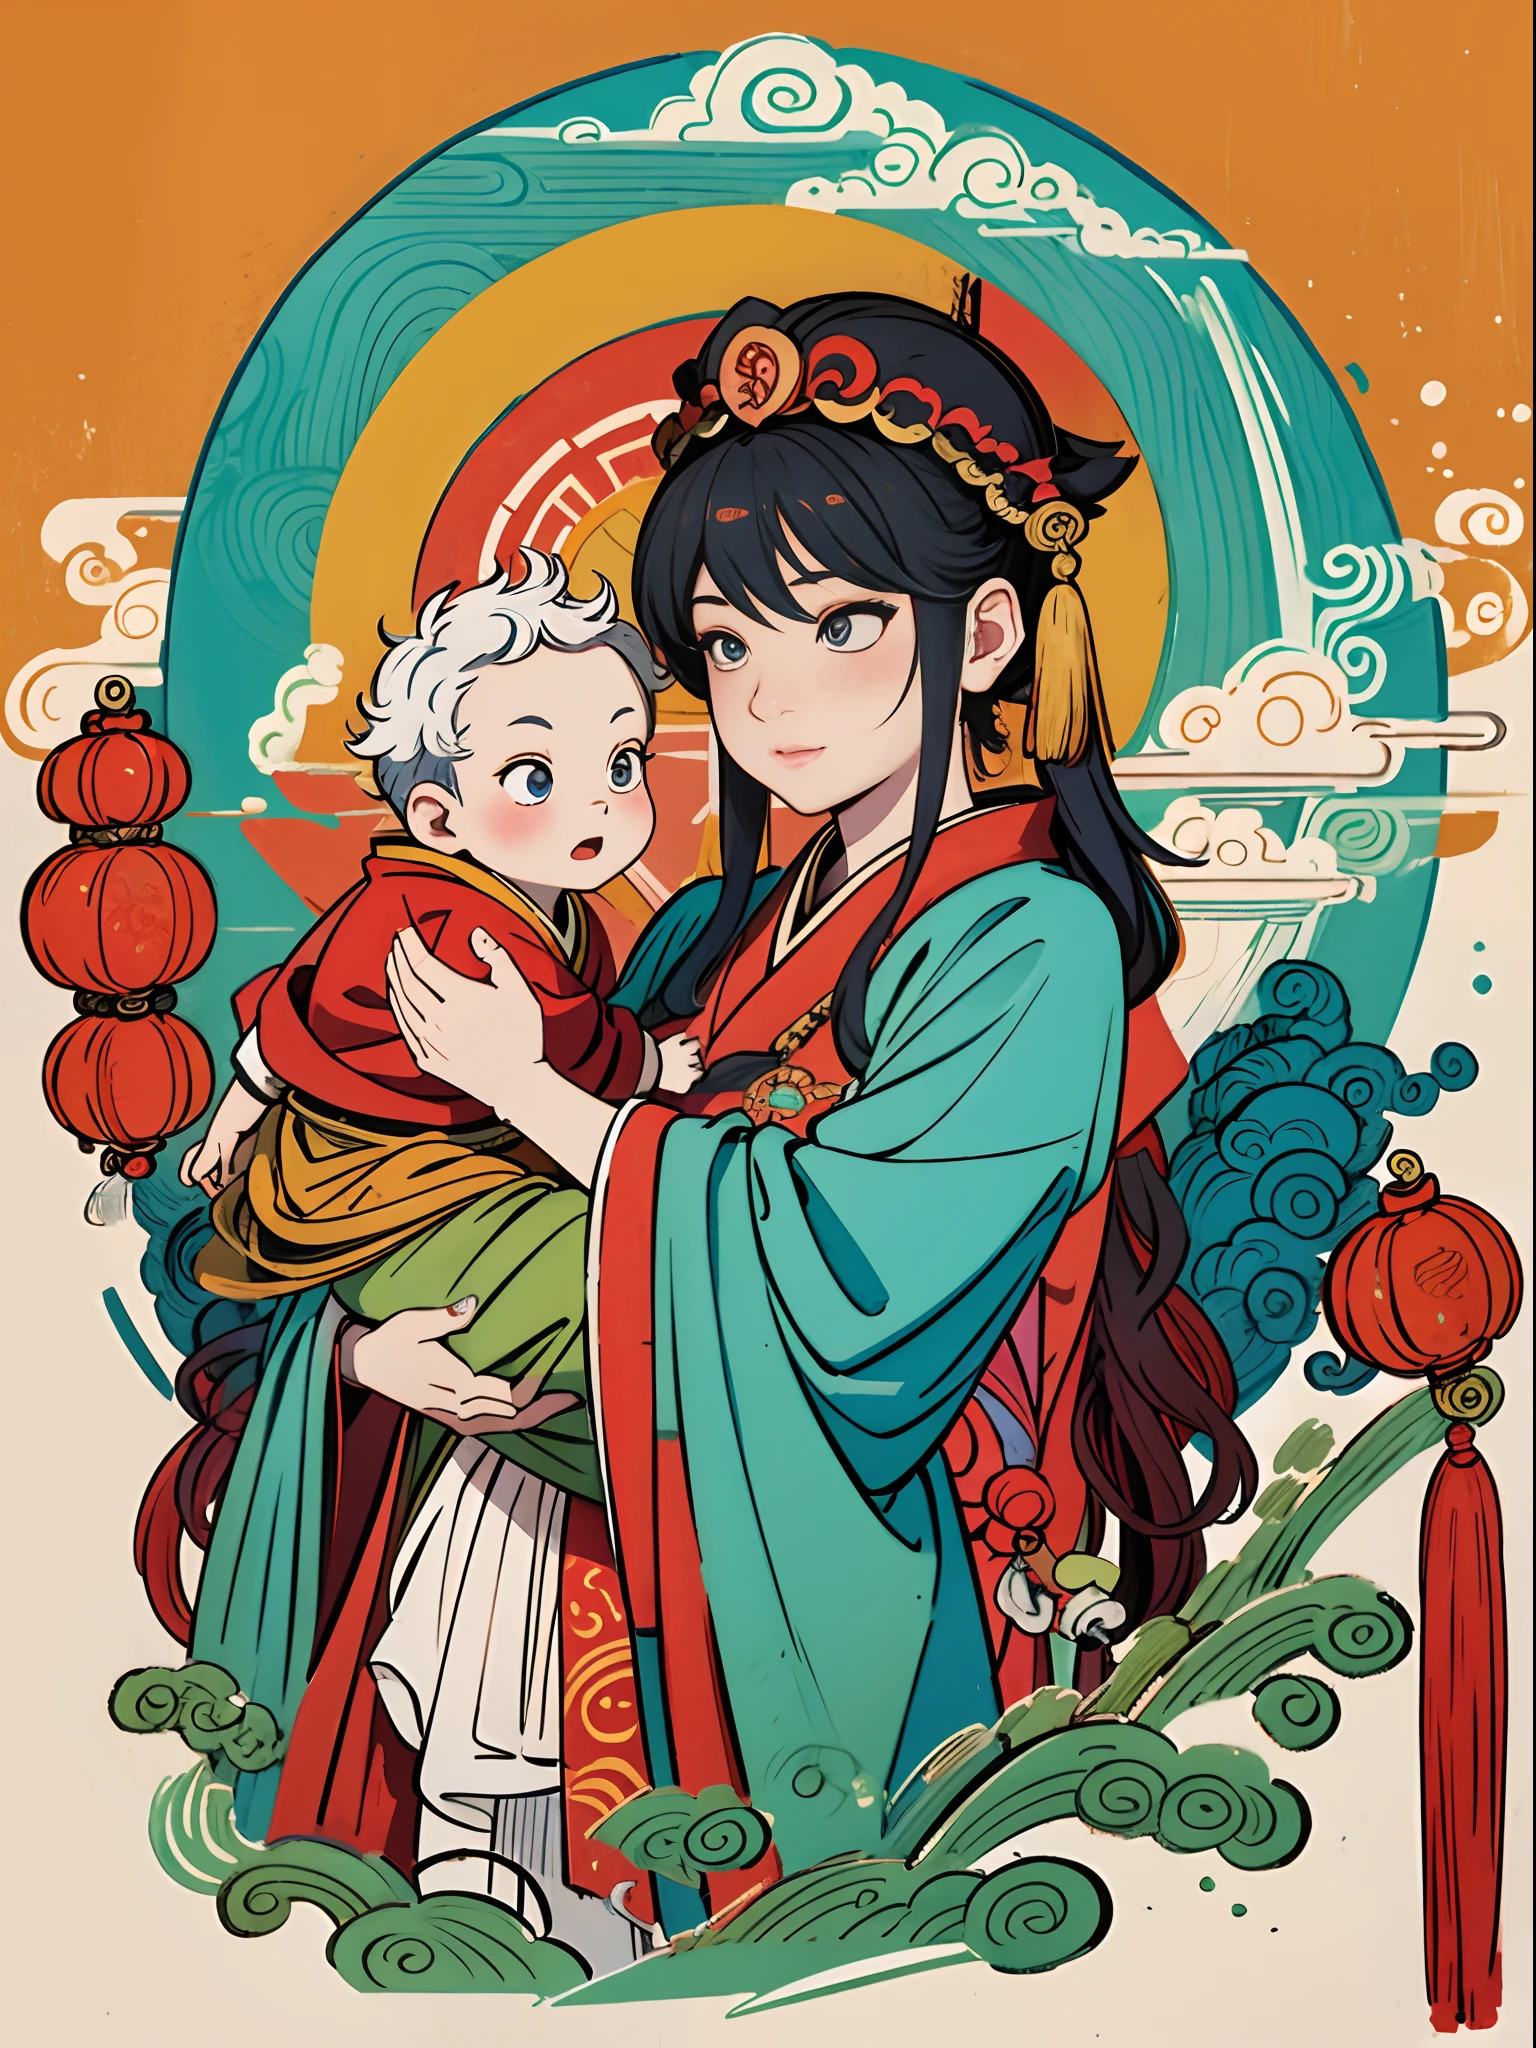 ภาพวาดของหญิงสาวสวยอุ้มเด็กผู้ชายไว้ในอ้อมแขนของเธอ, ชนะ, ชนะ of the southern seas, เด็กทารกสวมเสื้อคลุมสีแดง, โดย Chen Jiru, โดย เหวิน โบเรน, หมึกจีนและภาพวาดล้าง, โดย หวัง ลือ, เจ้าแม่จีนโบราณ, โดย คูเล่เล่ย, ภาพประกอบปากกาพู่กันจีน, แรงบันดาลใจจากจางเซดวน, แรงบันดาลใจจาก Kaigetsudō Anchi, ที่จับลูกประคำ, ดวงตาอยู่ที่กล้อง,